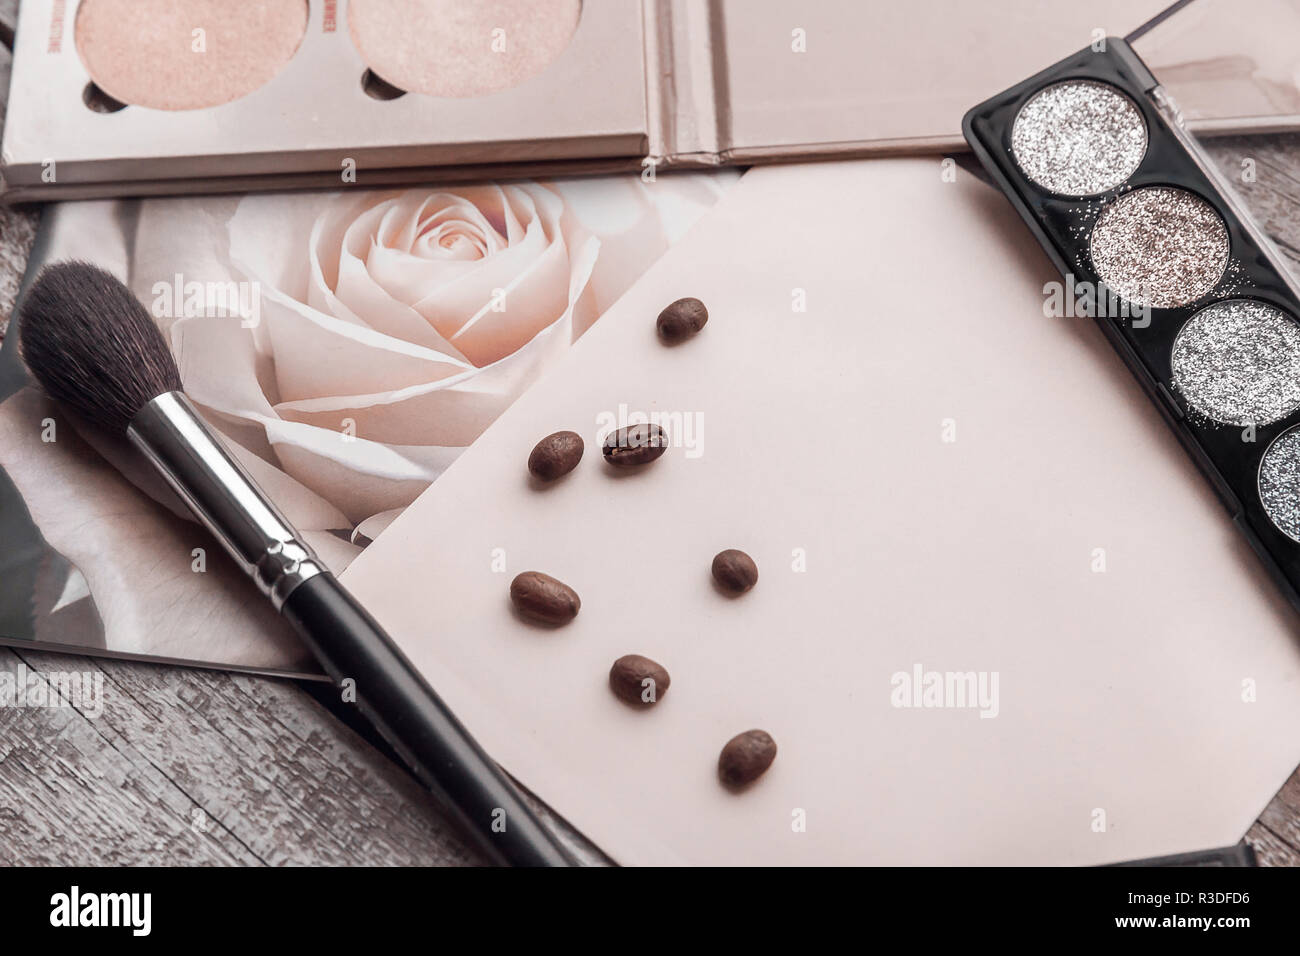 Imagen de maquillaje cosmético laicos plana color rosa de fondo copiar texto del espacio de belleza contenido gráfico Foto de stock